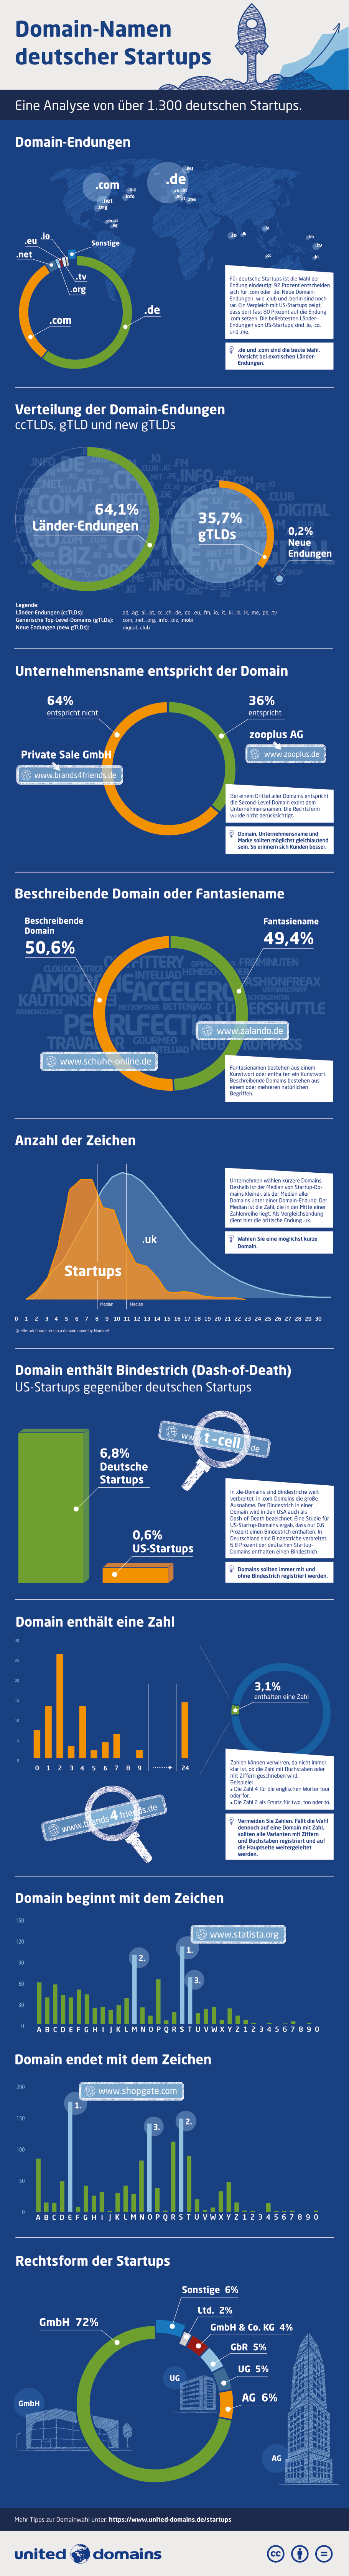 Studie: Deutsche Startup-Domains – Infografik